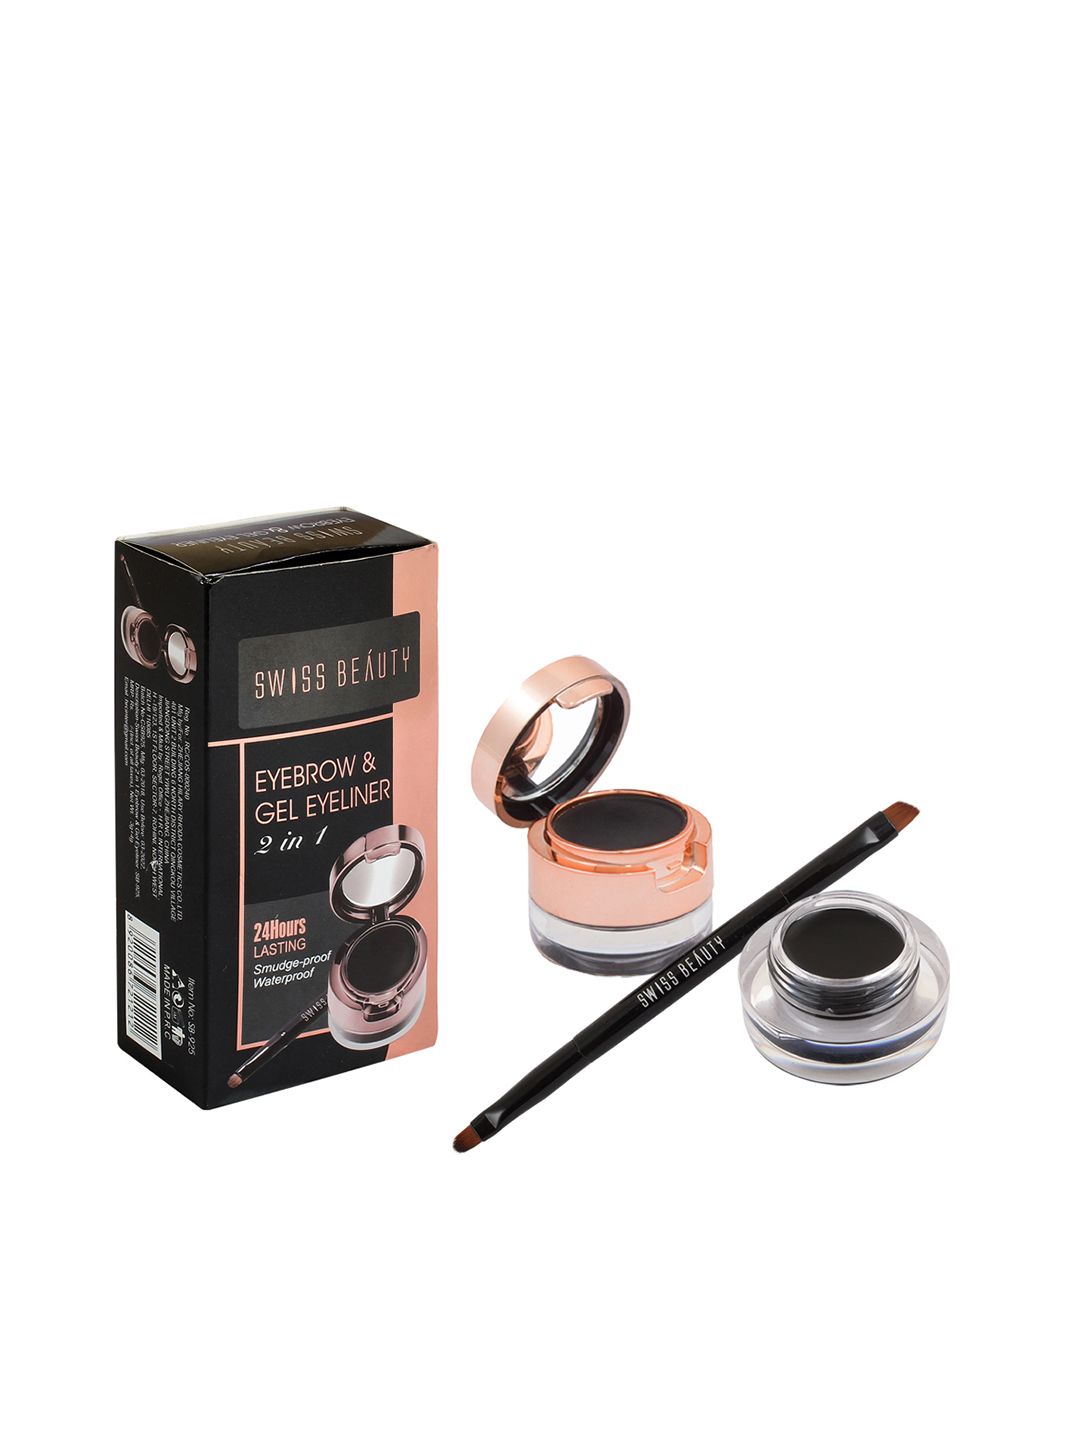 SWISS BEAUTY 2-in-1 Eyebrow & Gel Eyeliner - Black Price in India